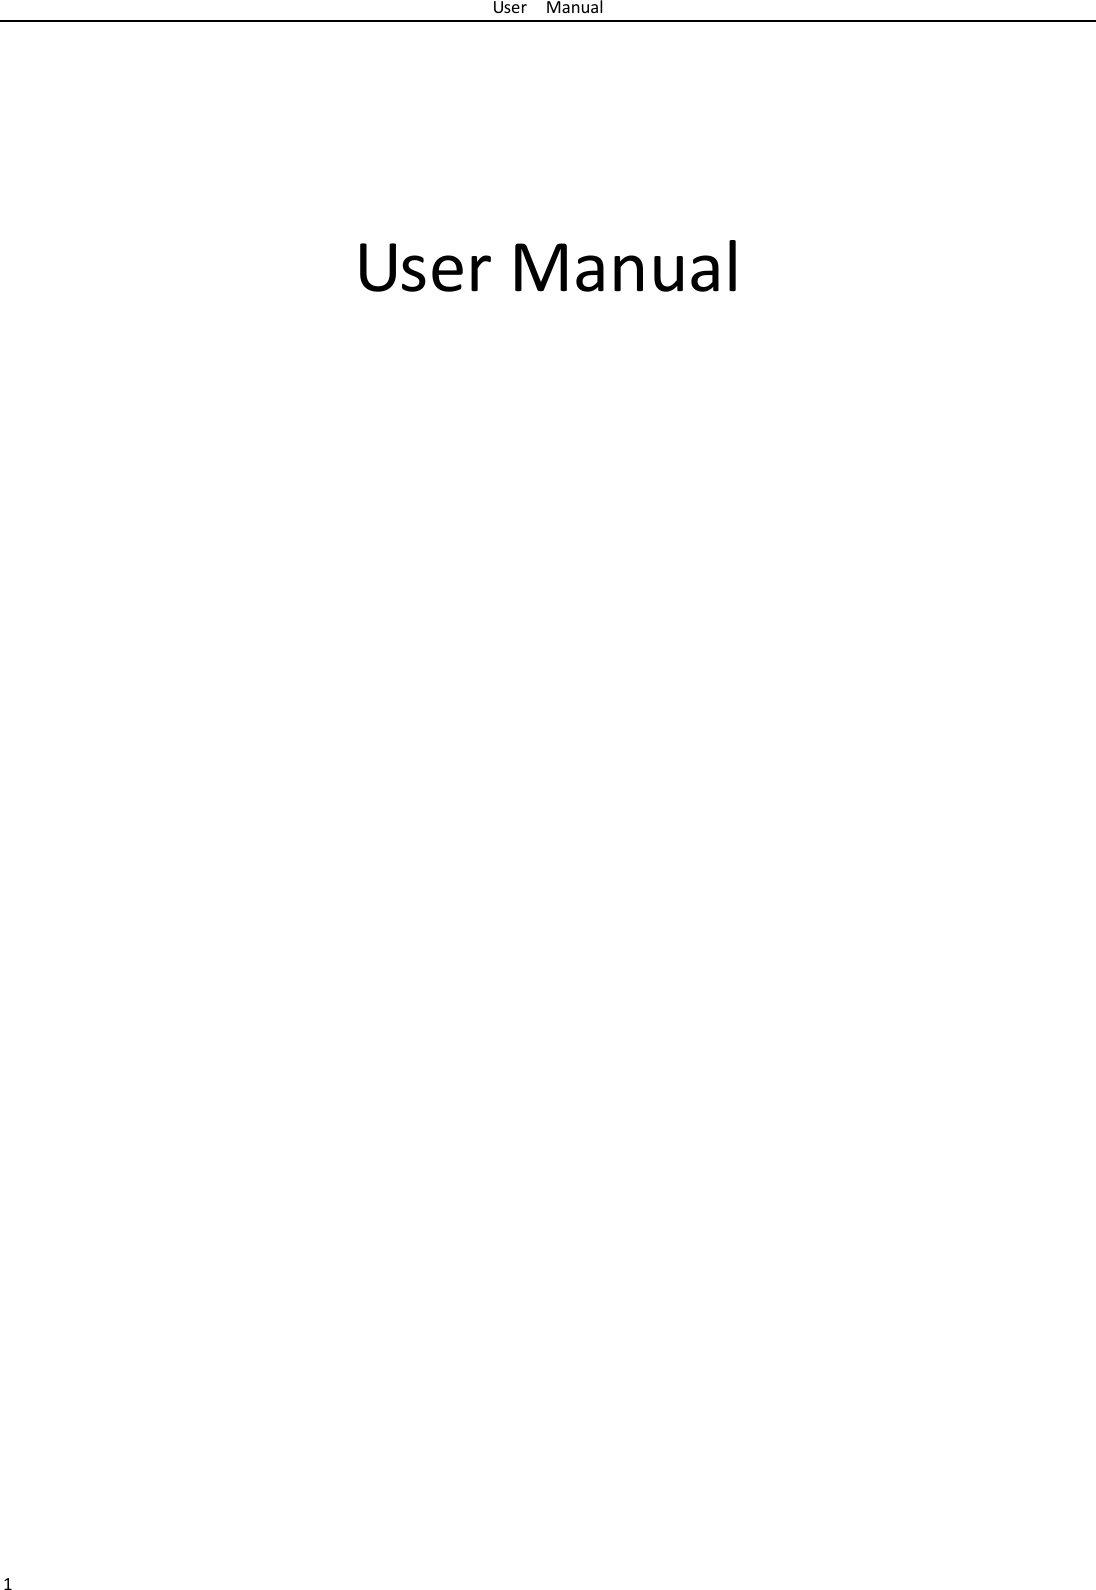 UserManual1UserManual